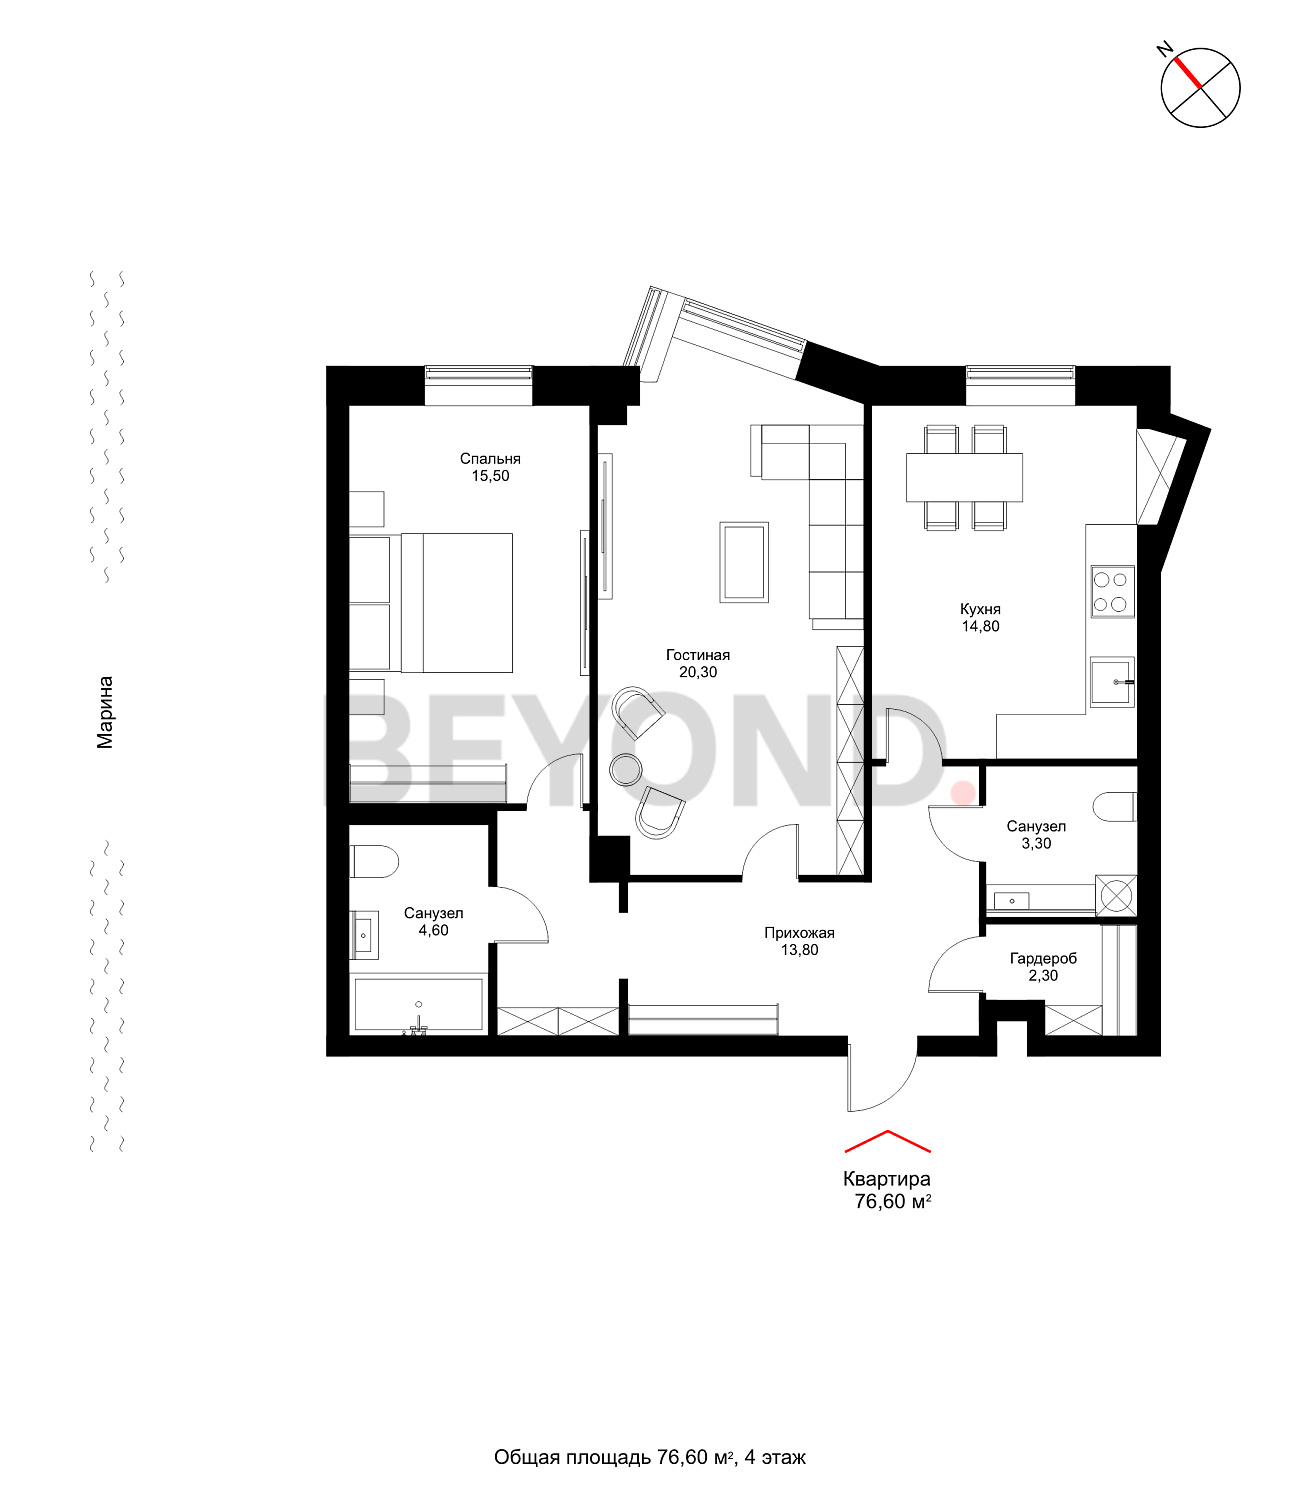 План квартиры №1067 с 2 спальнями на 4 этаже 1 корпуса Royal Park